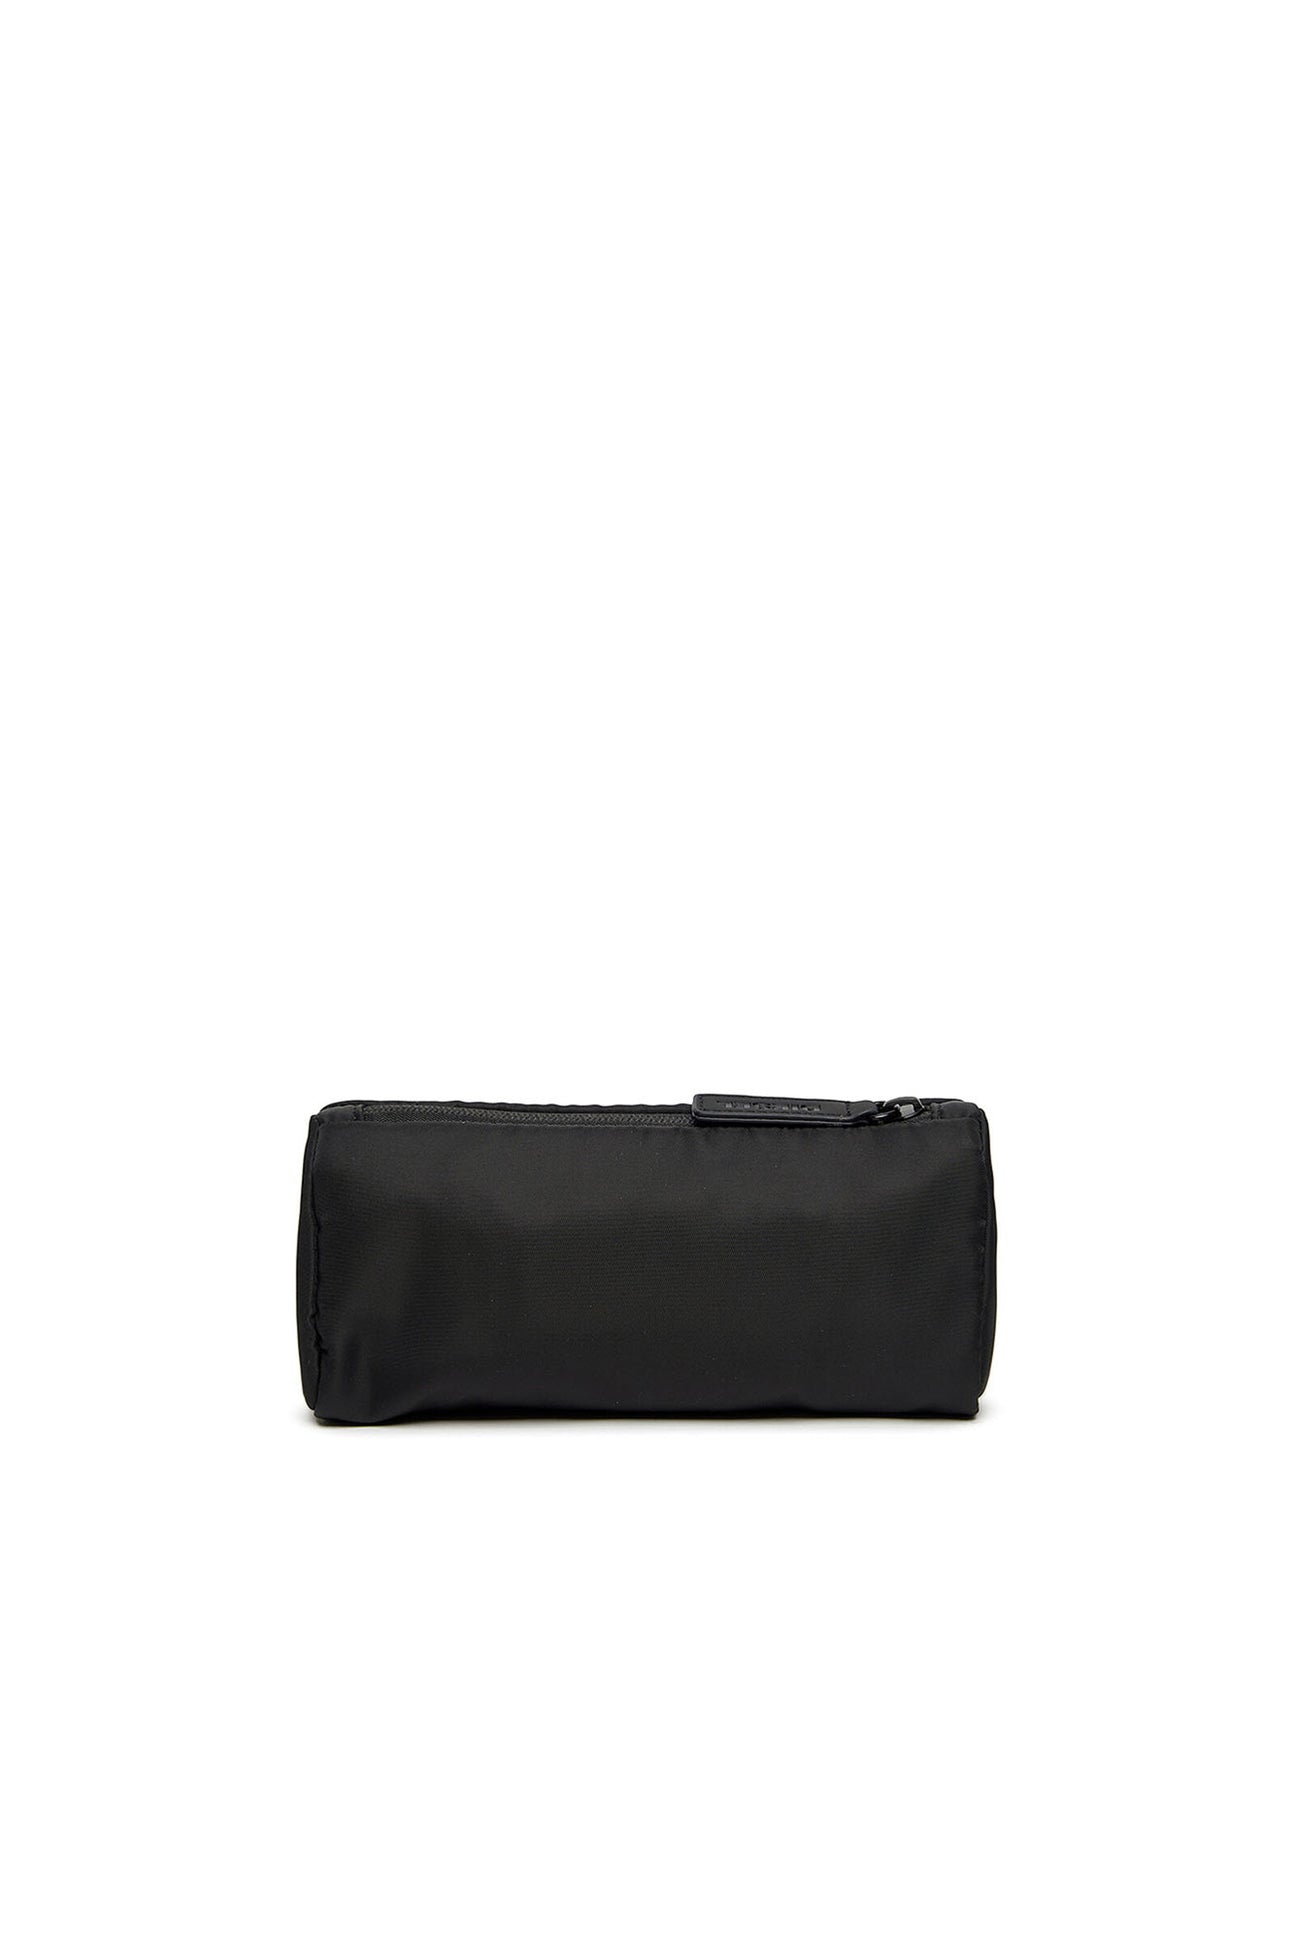 Black pouch with logo Black pouch with logo